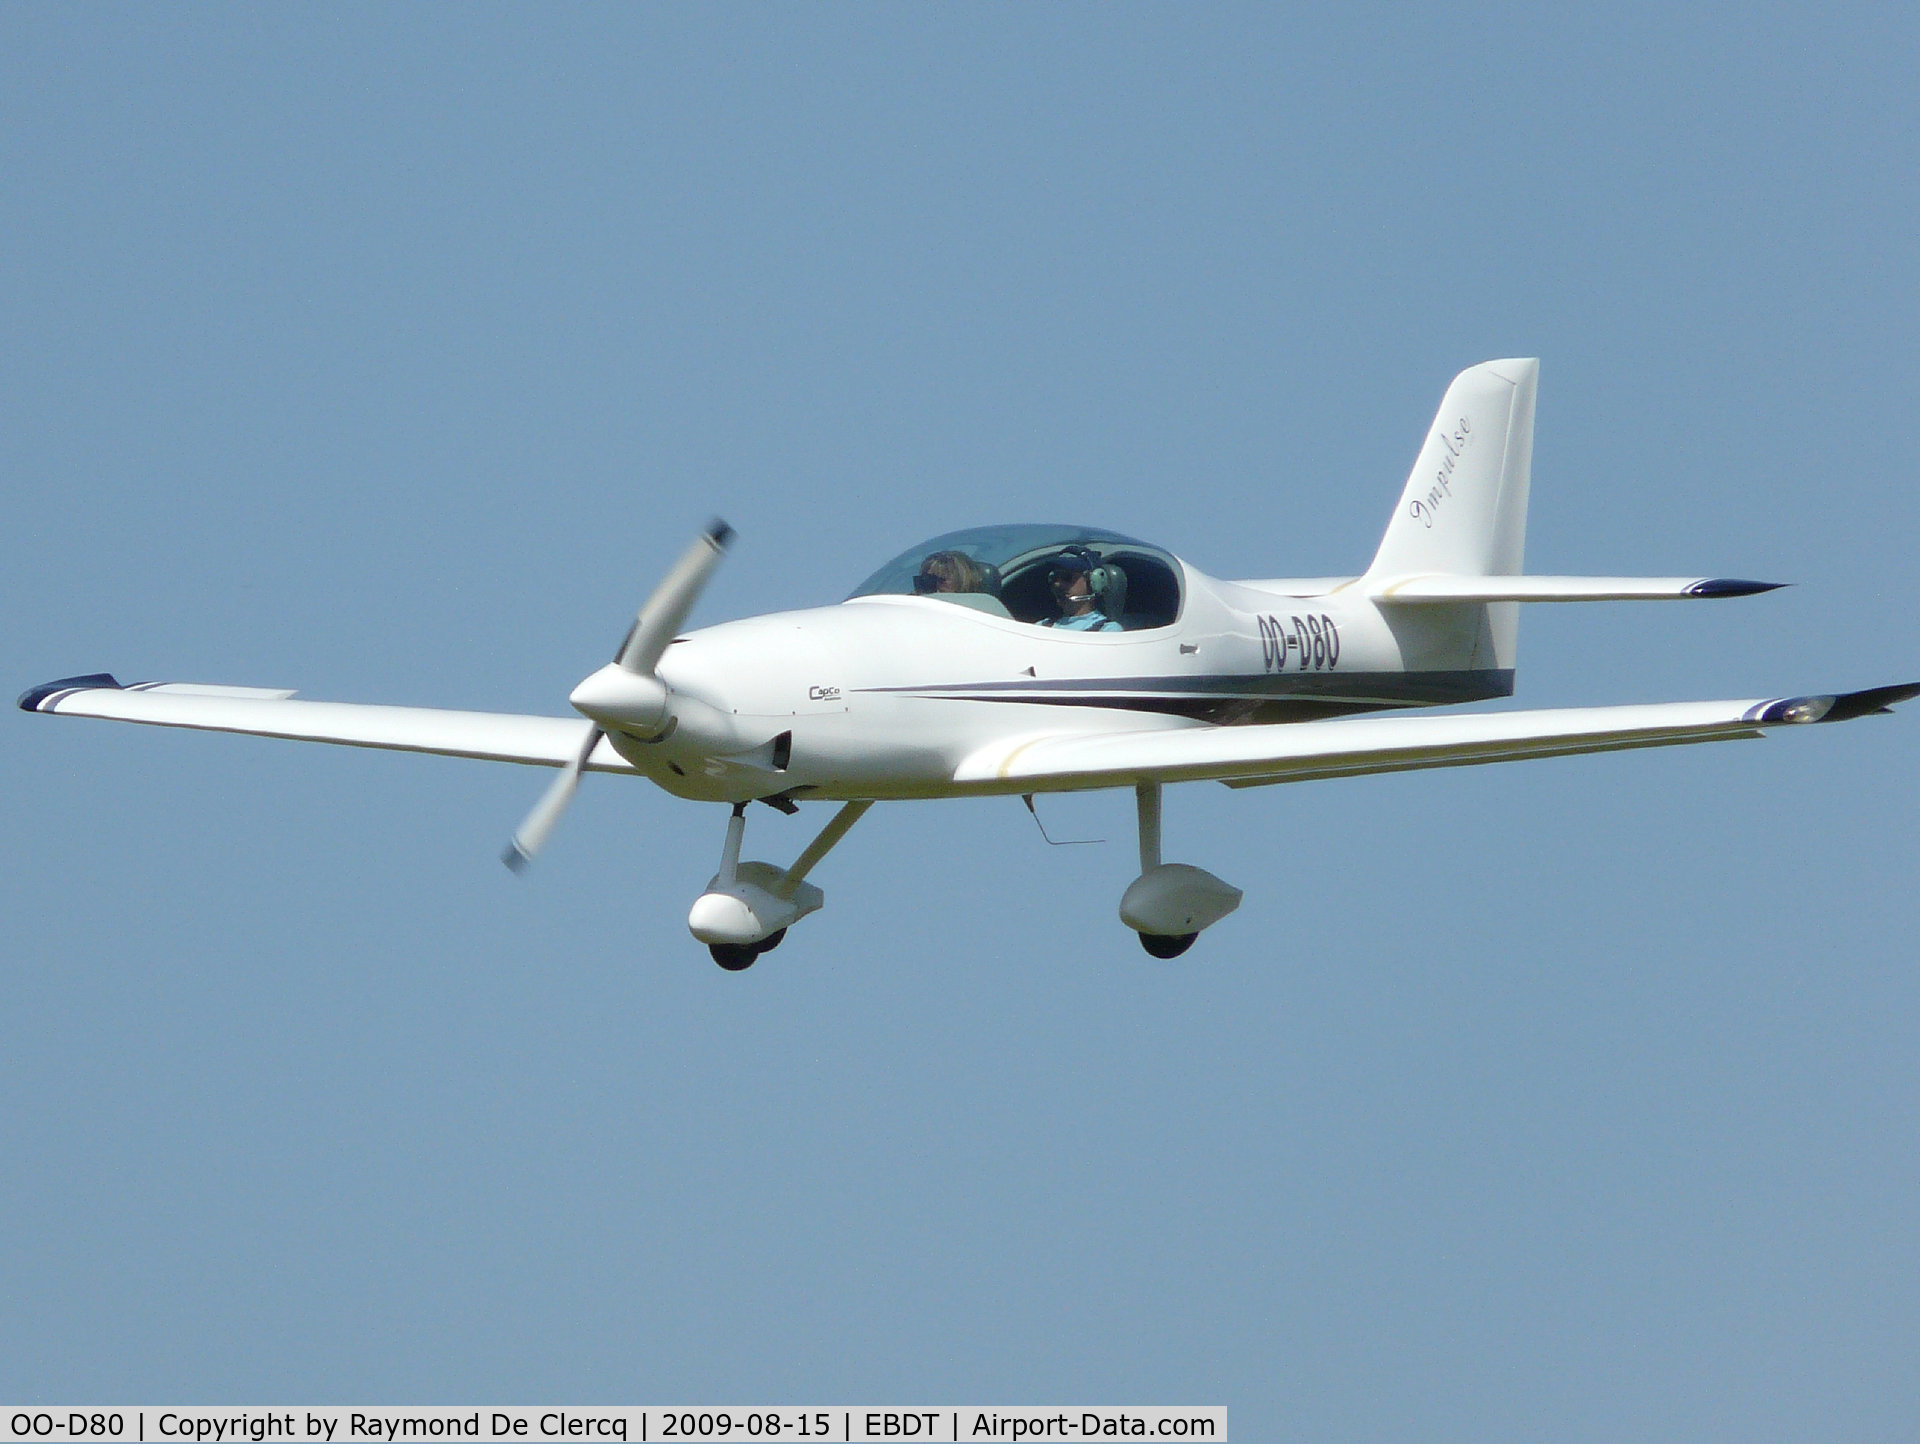 OO-D80, Impulse 100 C/N 02, Landing at 2009 Schaffen fly in.